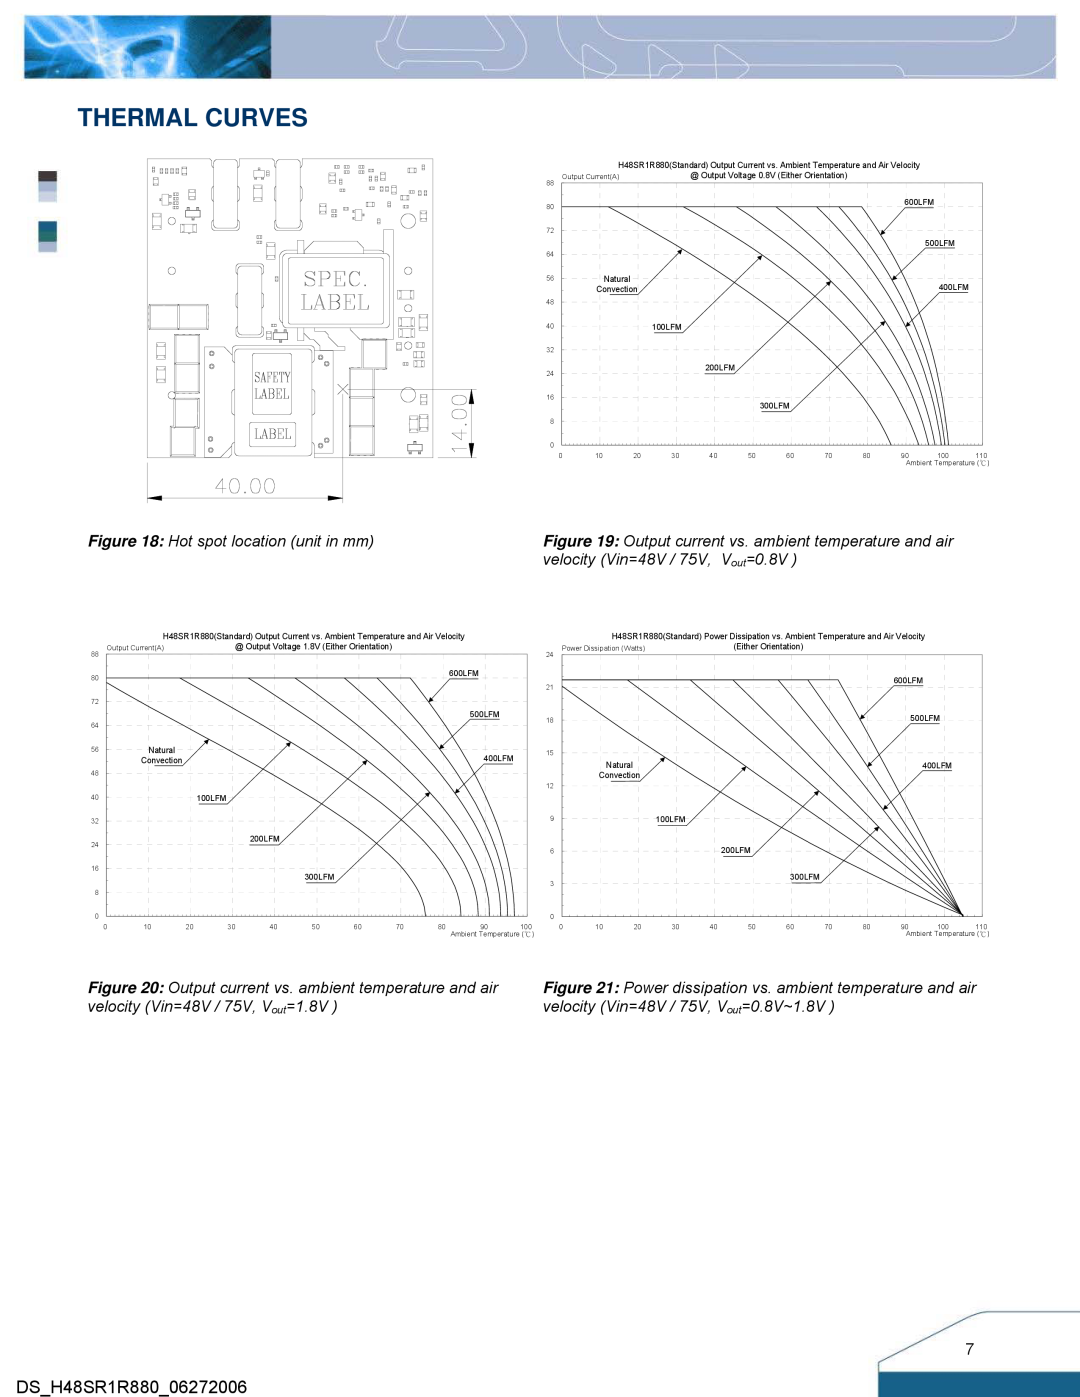 Delta Electronics H48SR manual Thermal Curves, Hot spot location unit in mm, velocity Vin=48V / 75V, V out=0.8V 